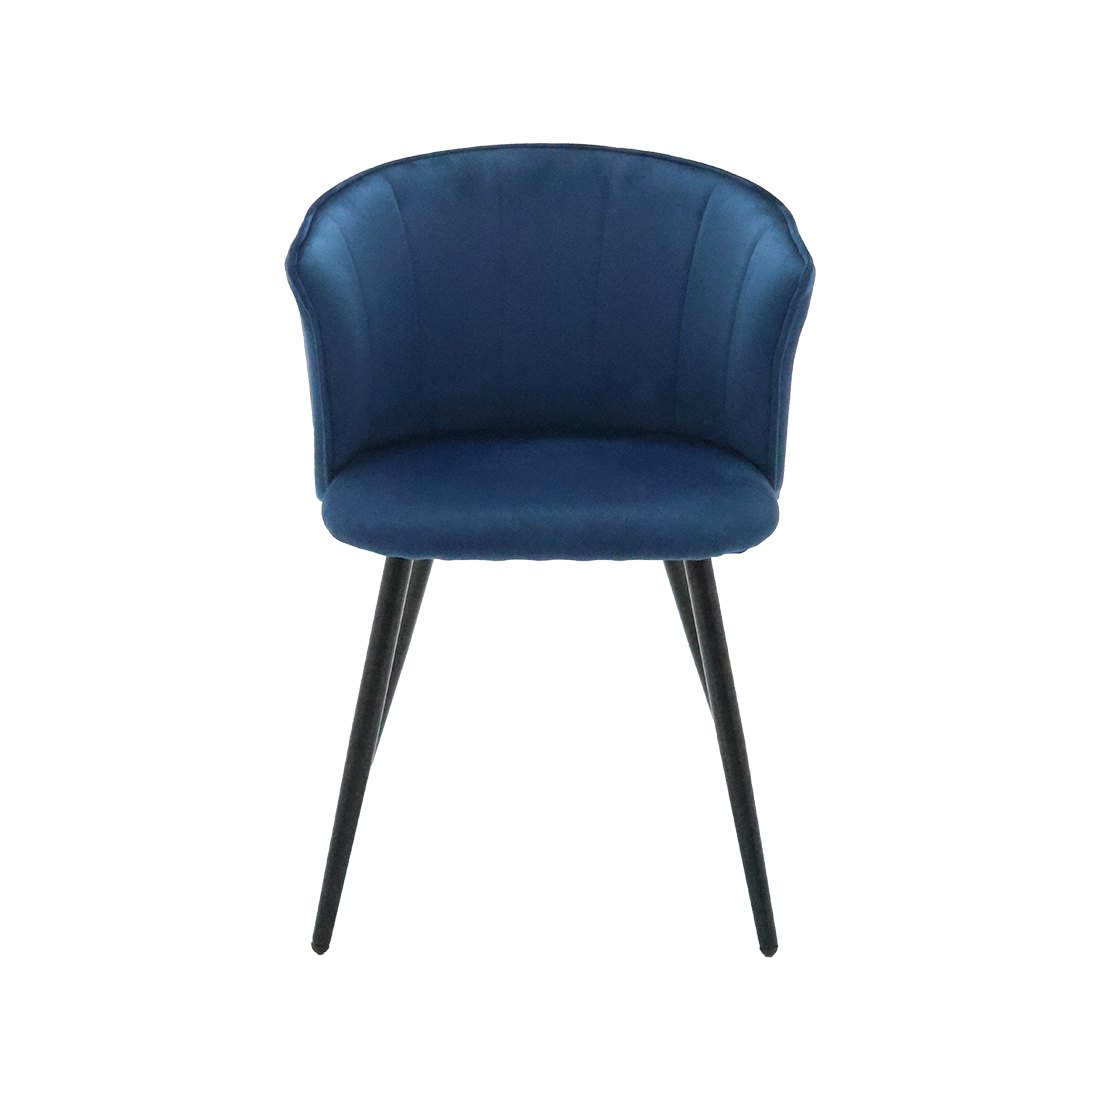 เก้าอี้เหล็กเบาะผ้า รุ่น Folkker สีน้ำเงิน1